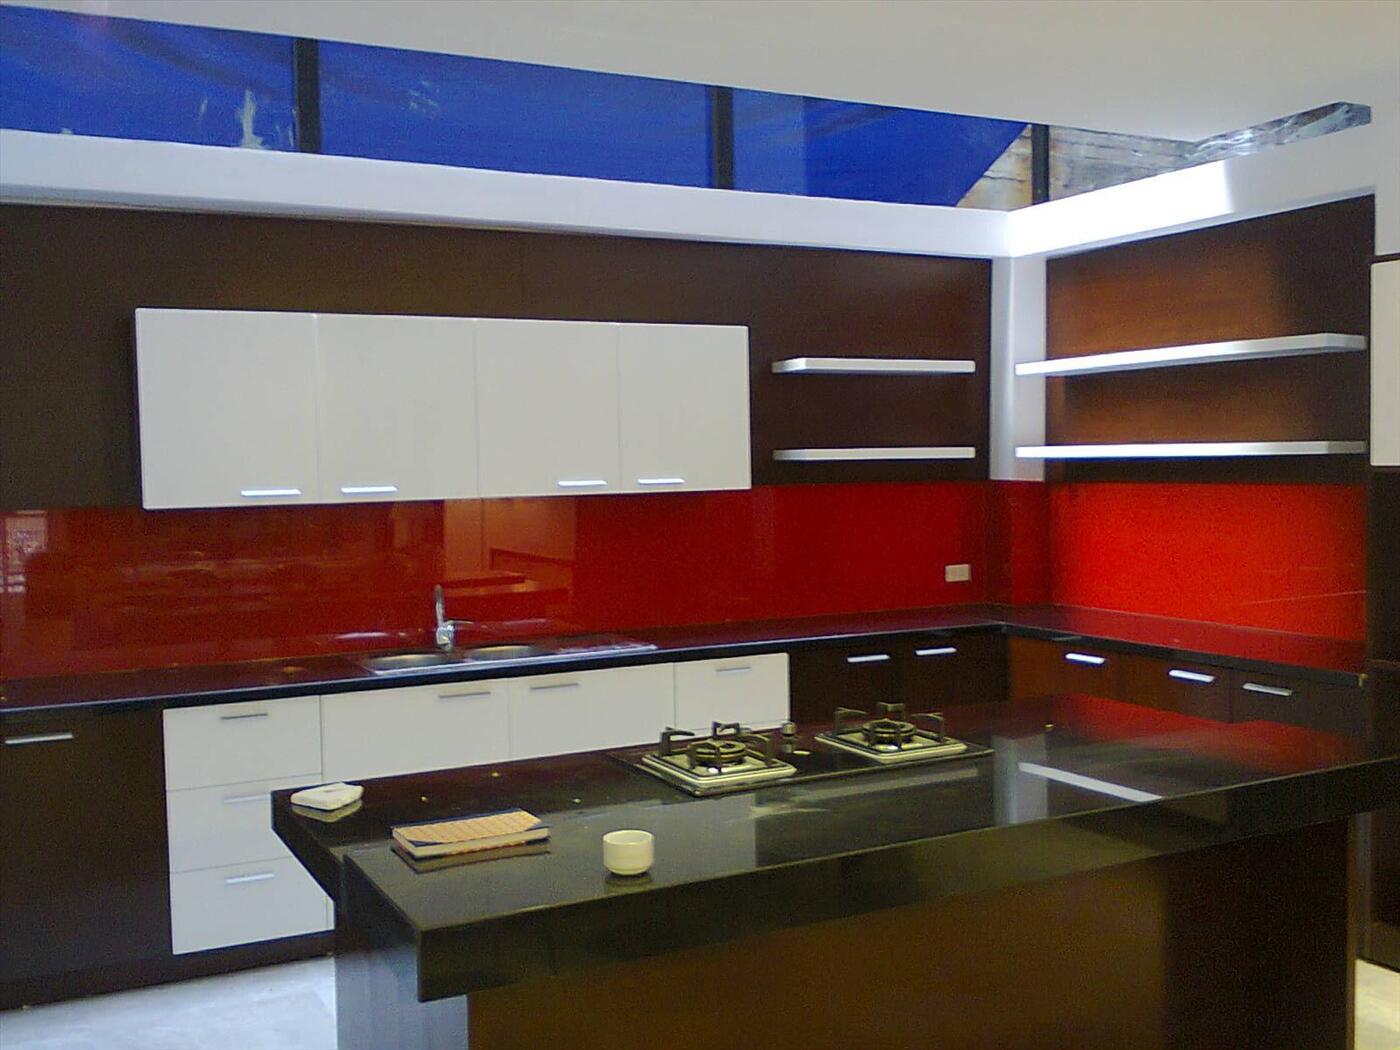 Thi công kính màu trang trí phòng bếp Quận Tây Hồ Hà Nội